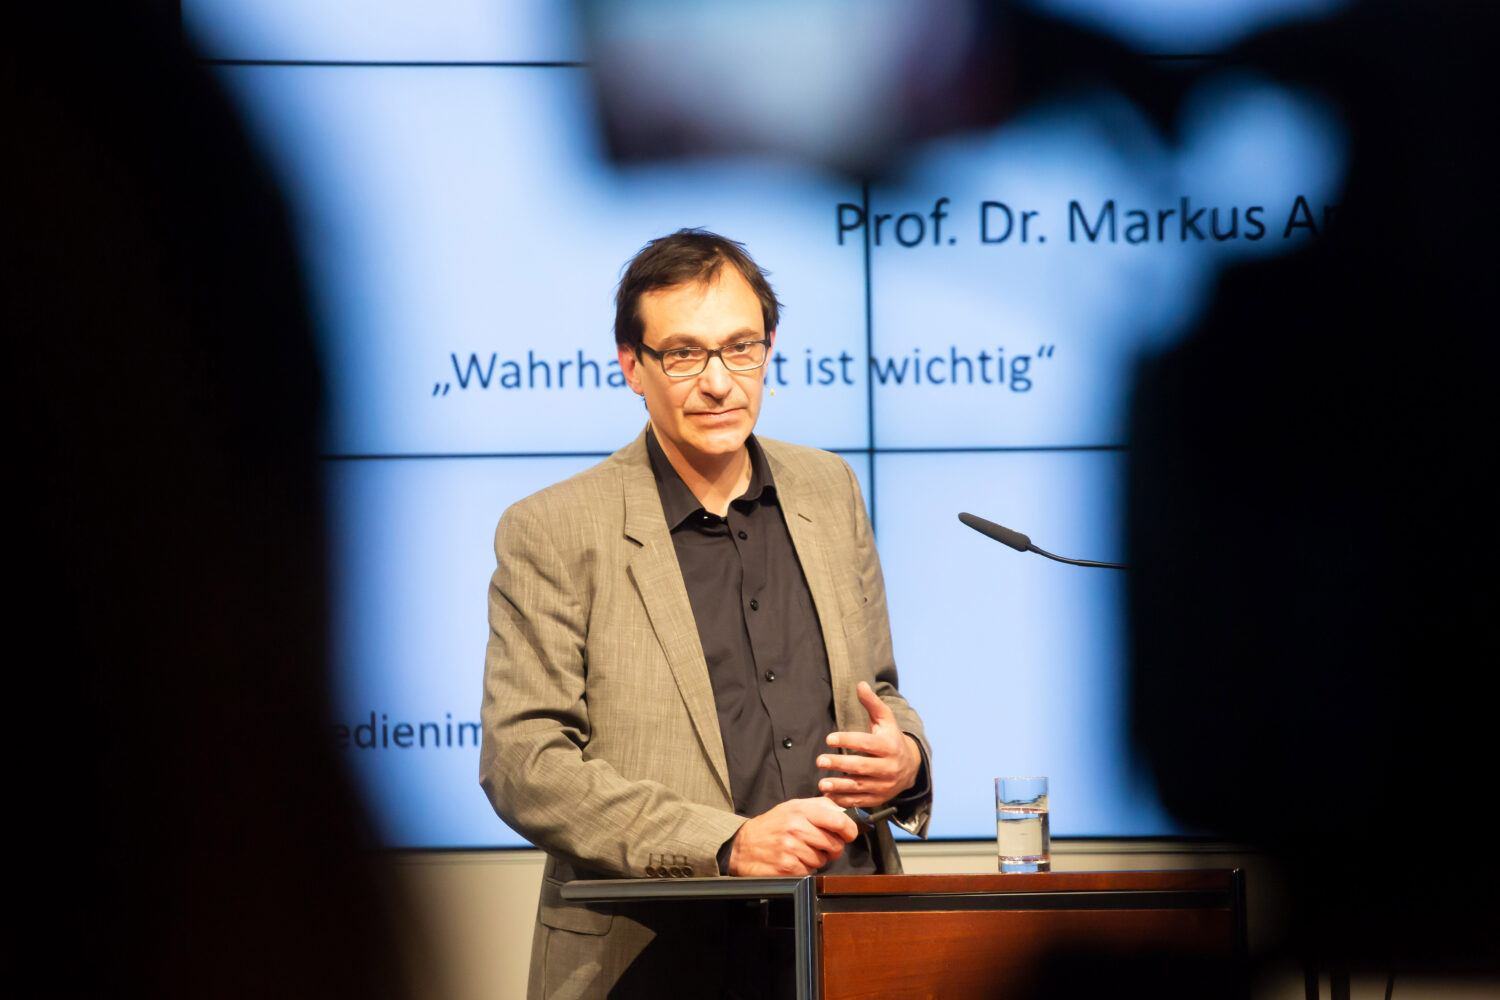 Prof. Dr. Markus Appel während seiner Vortrags am Rednerpult